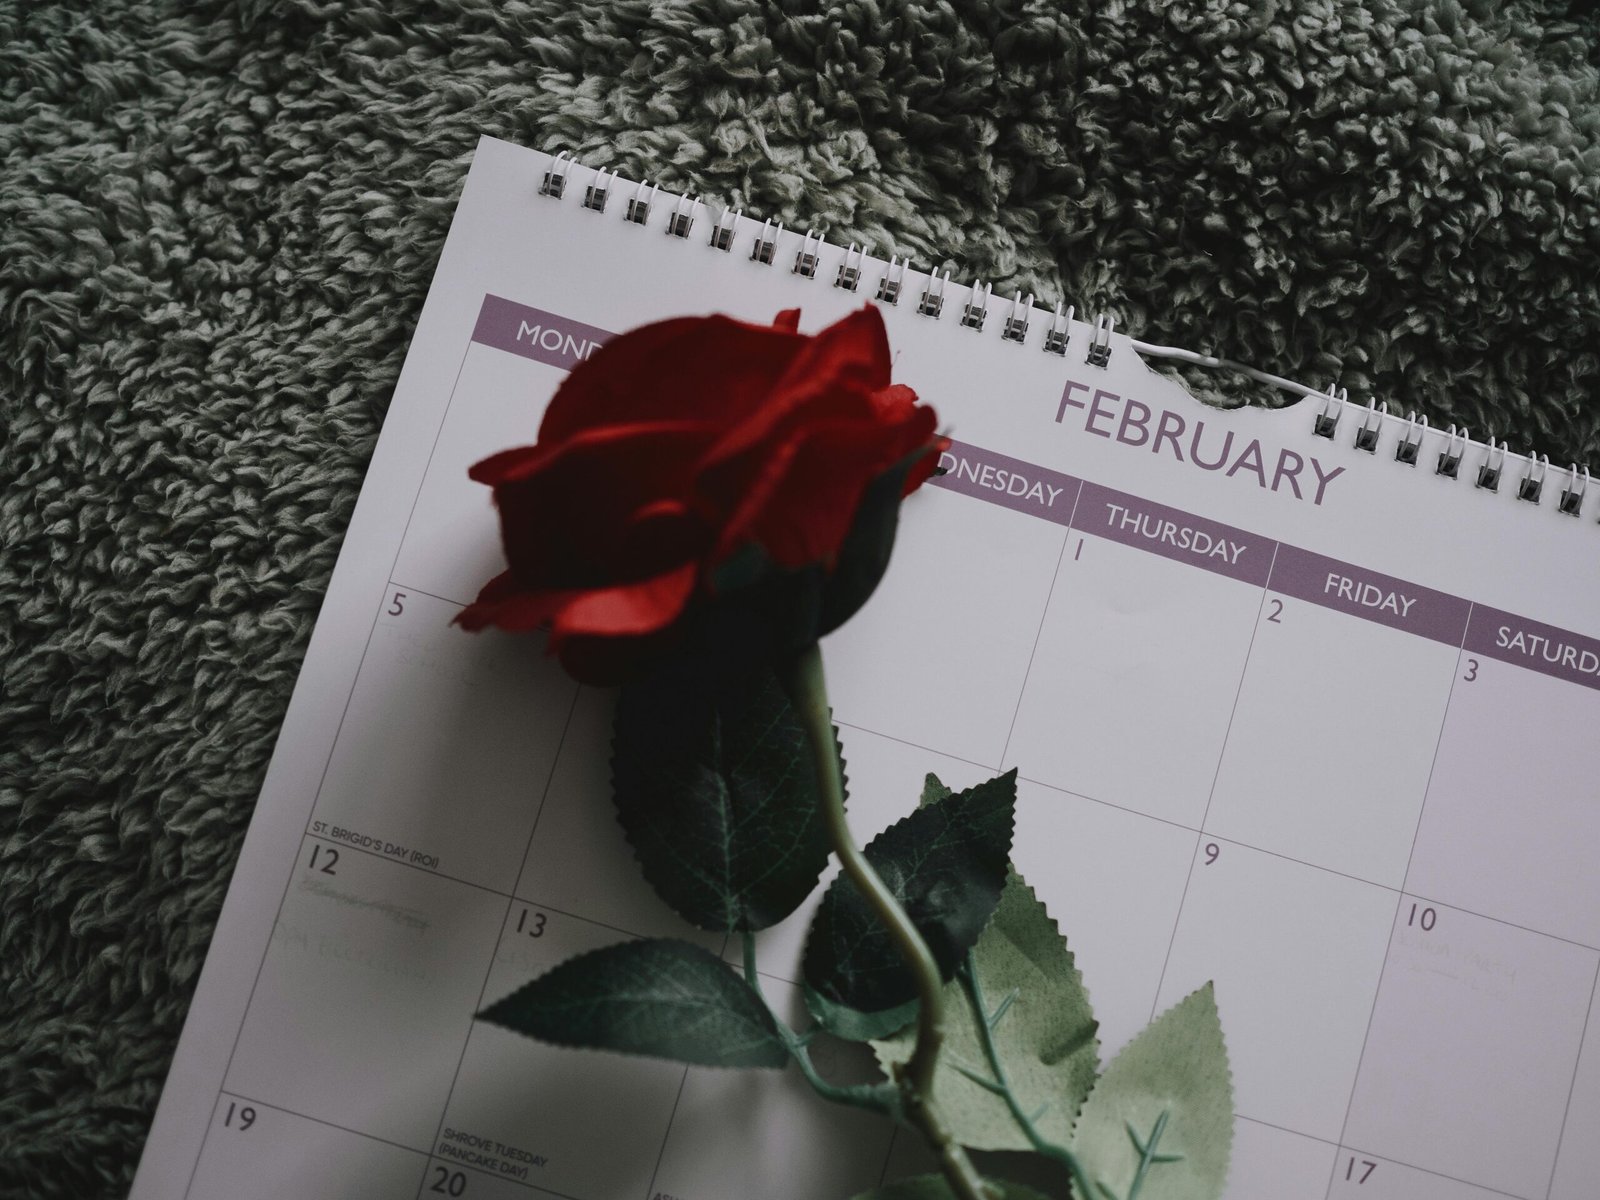 Cada 14 de febrero, el aire se llena de romance y afecto, marcando la celebración del Día de San Valentín. Pero, ¿alguna vez te has preguntado por qué esta fecha específica fue escogida para celebrar el amor? En esta ocasión te contaremos la fascinante historia detrás del 14 de febrero y cómo esta fecha se convirtió en un símbolo universal del amor.